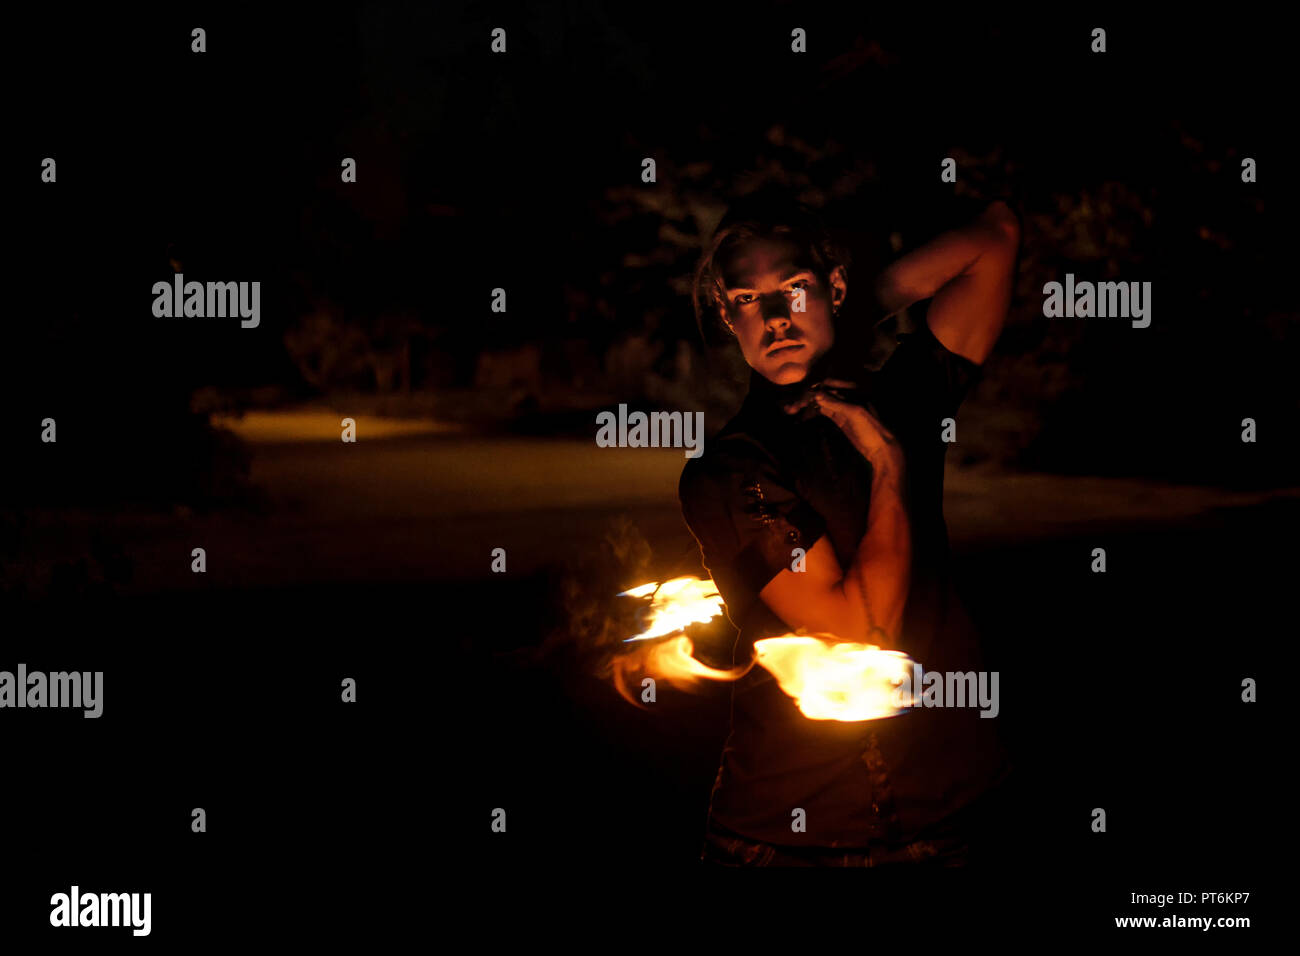 Feuer zeigen. Fakir jongliert mit Feuer Poi. Nacht Leistung. Dramatische portrait. Stockfoto